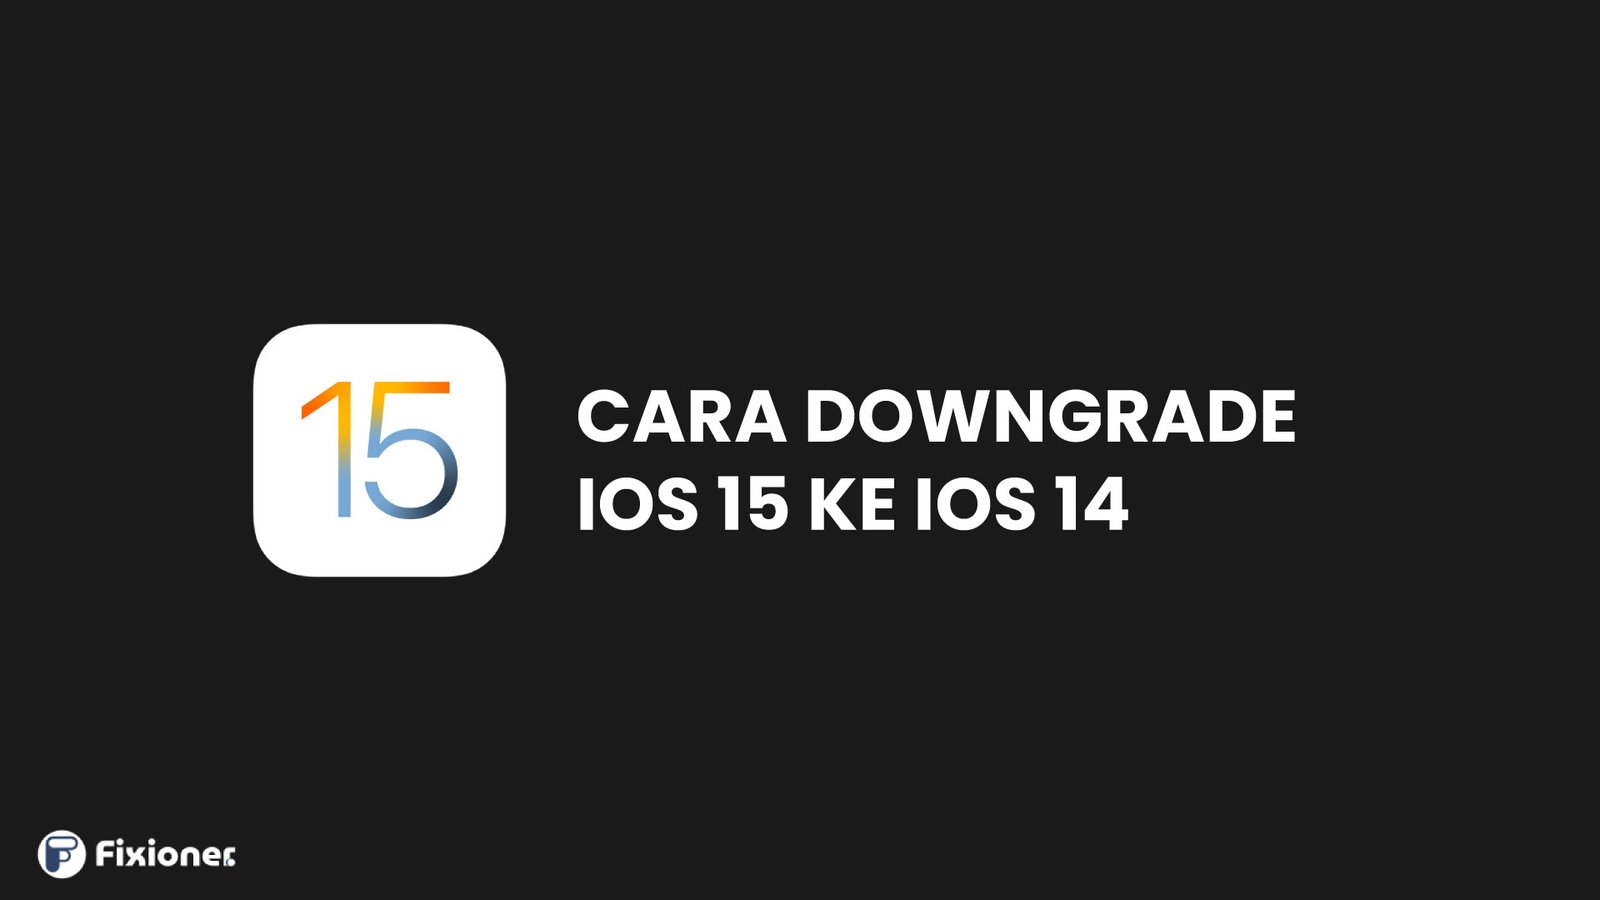 Cara downgrade ios 15 ke 14